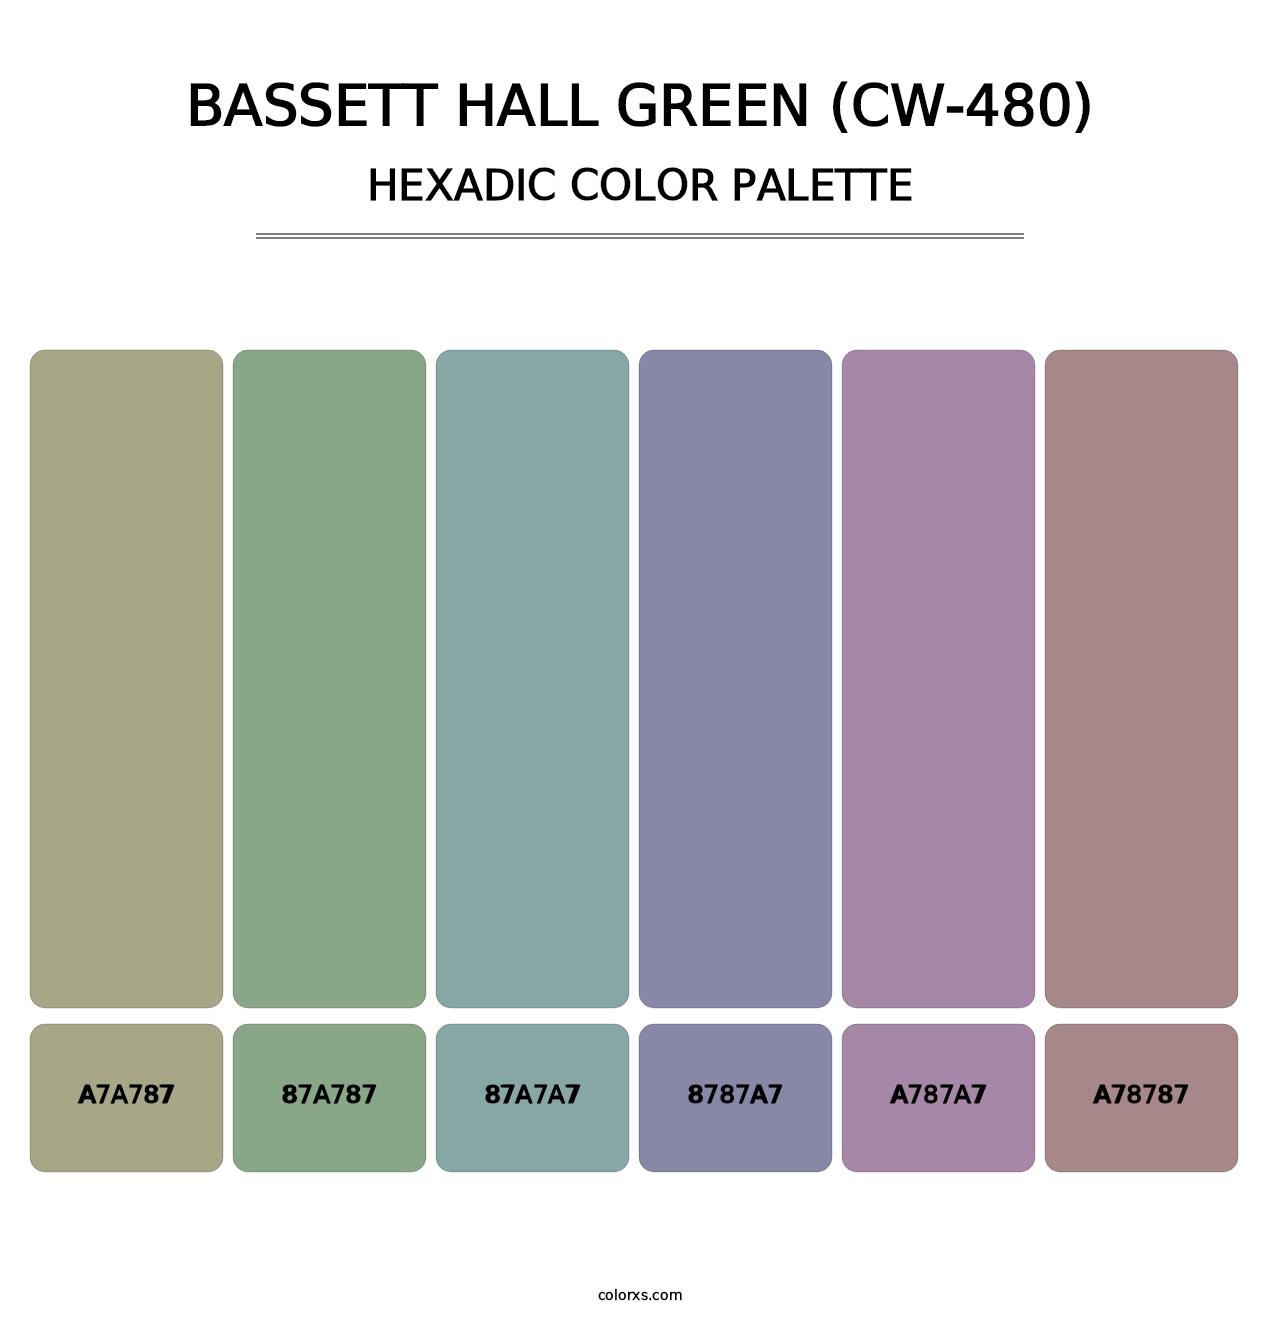 Bassett Hall Green (CW-480) - Hexadic Color Palette